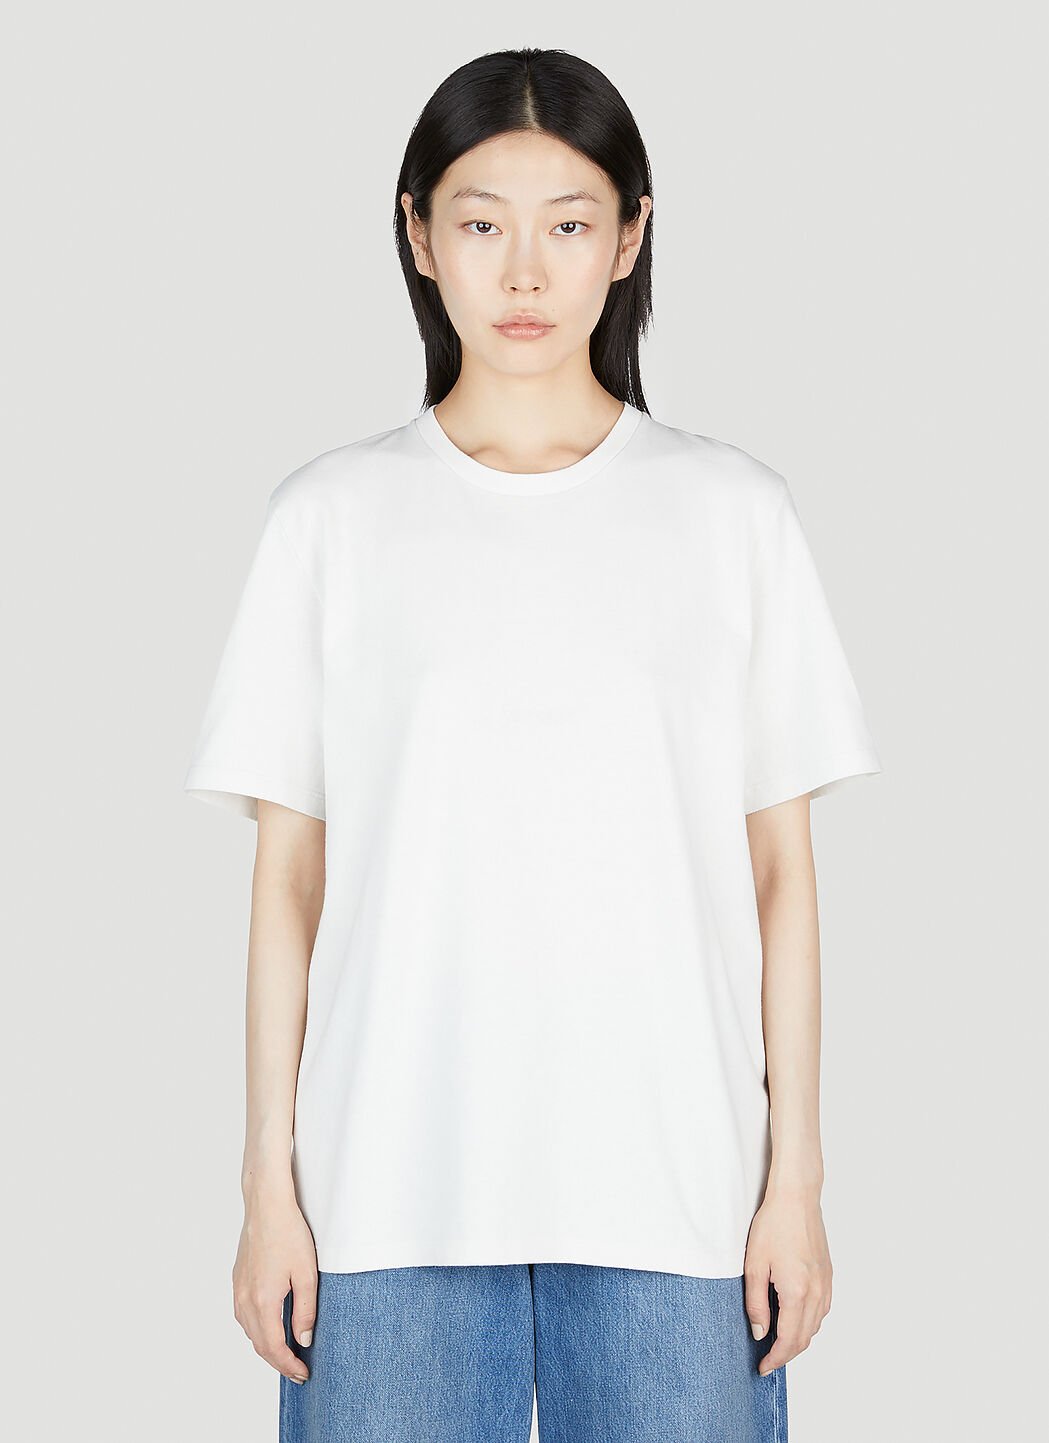 Jil Sander+ Tonal Logo T-shirt Cream jsp0251010